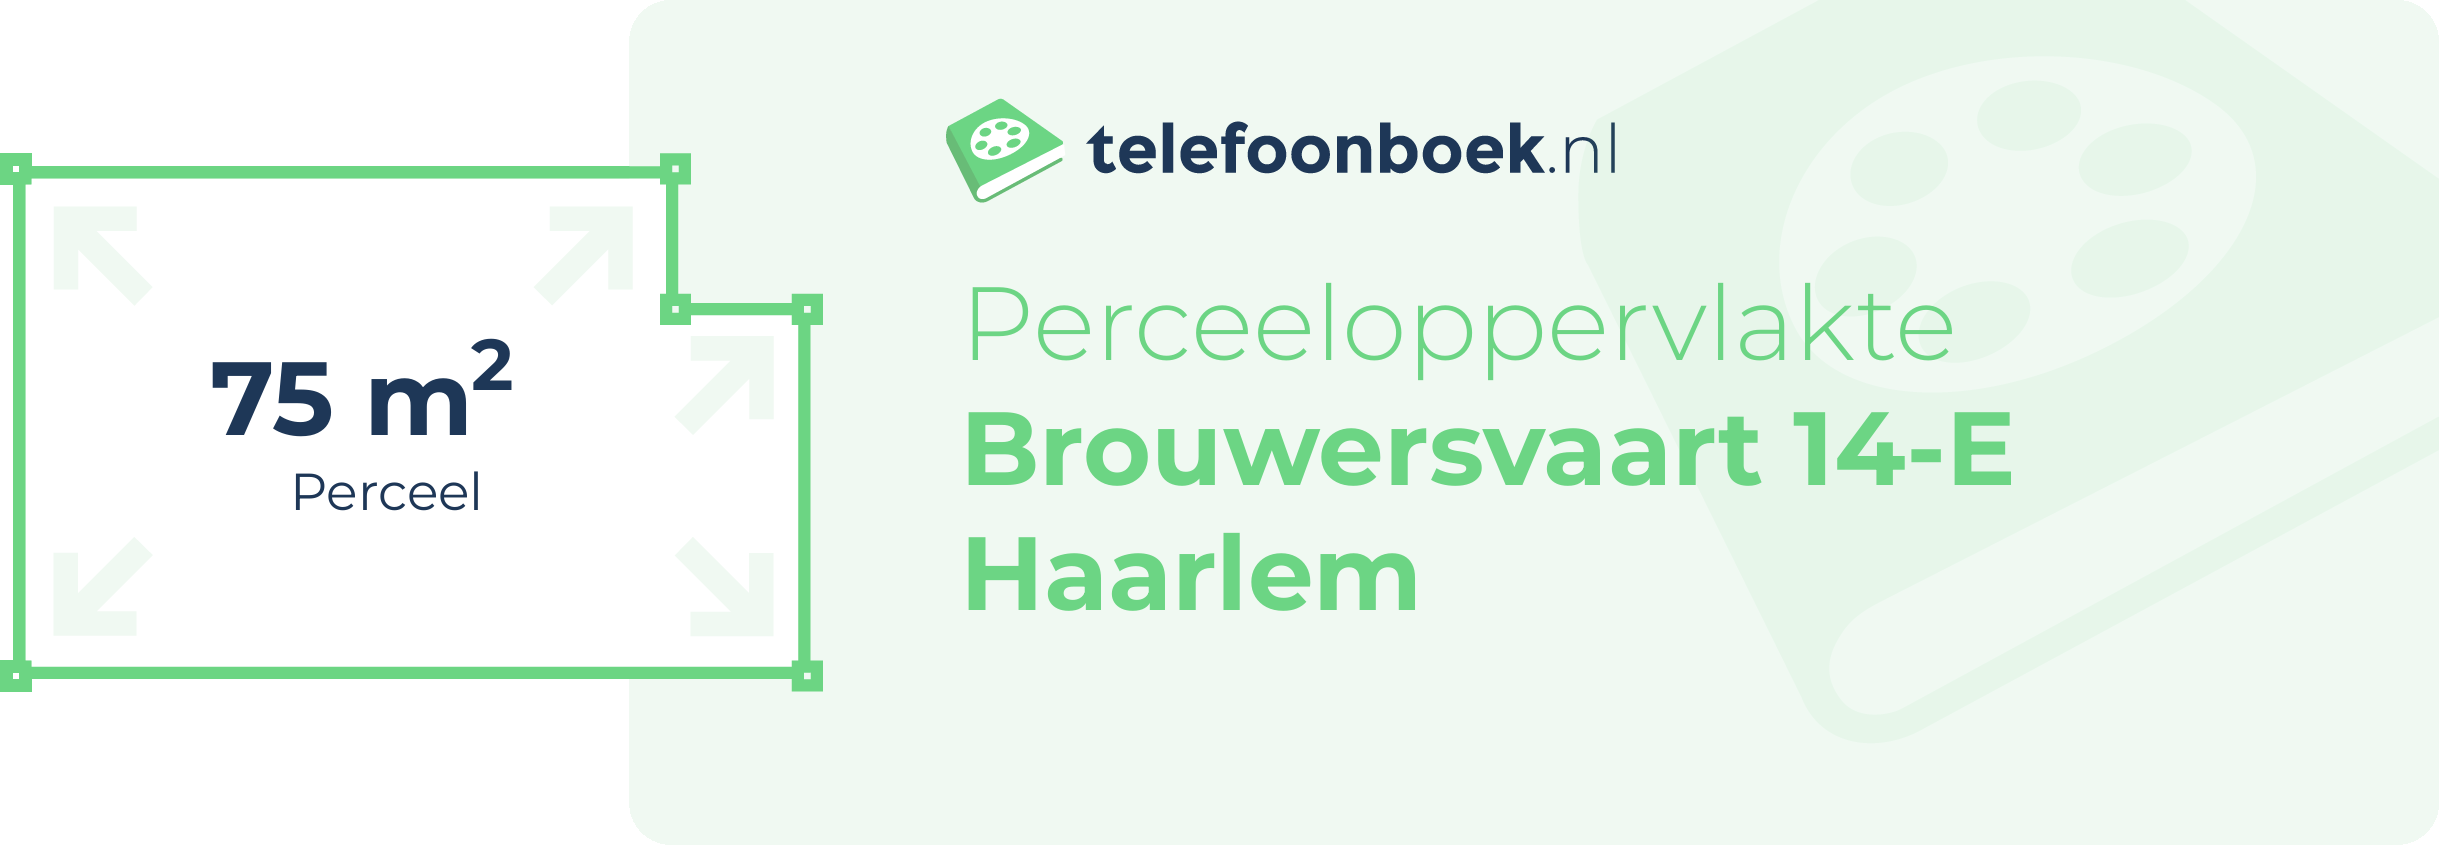 Perceeloppervlakte Brouwersvaart 14-E Haarlem